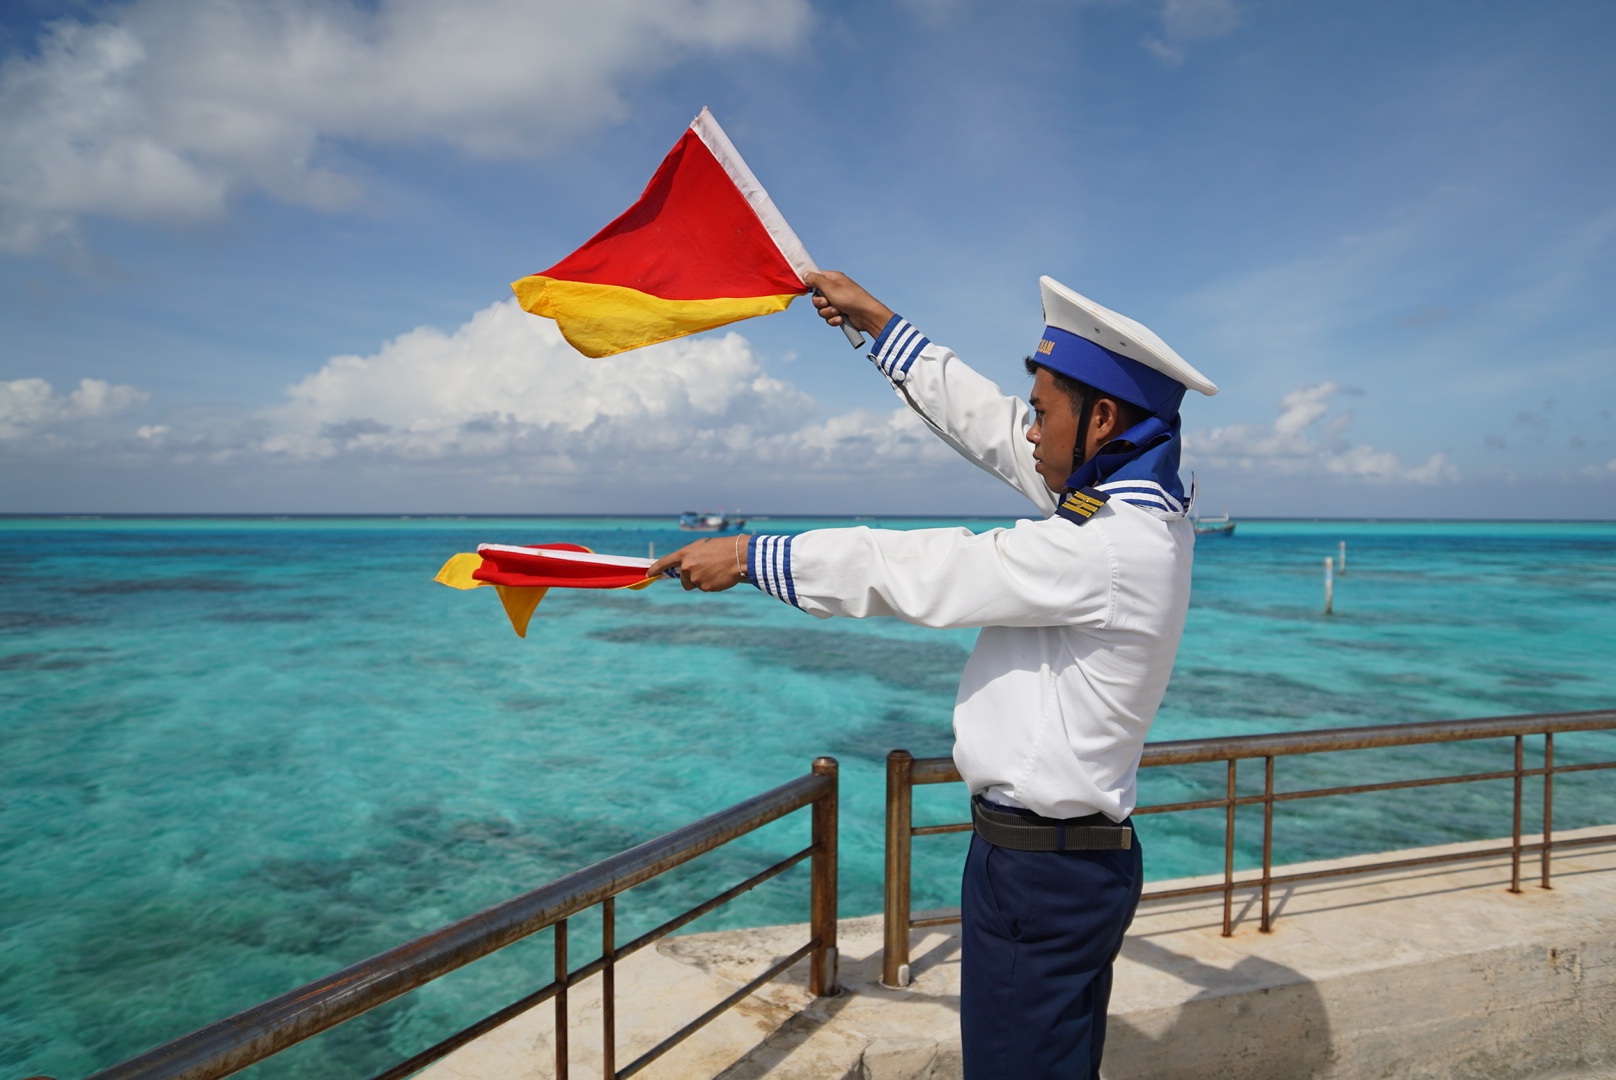 Tòa án Quốc tế về Luật Biển theo Phụ lục VI UNCLOS (ITLOS): Khả năng sử dụng Tòa trong việc đấu tranh, bảo vệ các quyền, lợi ích hợp pháp trên biển